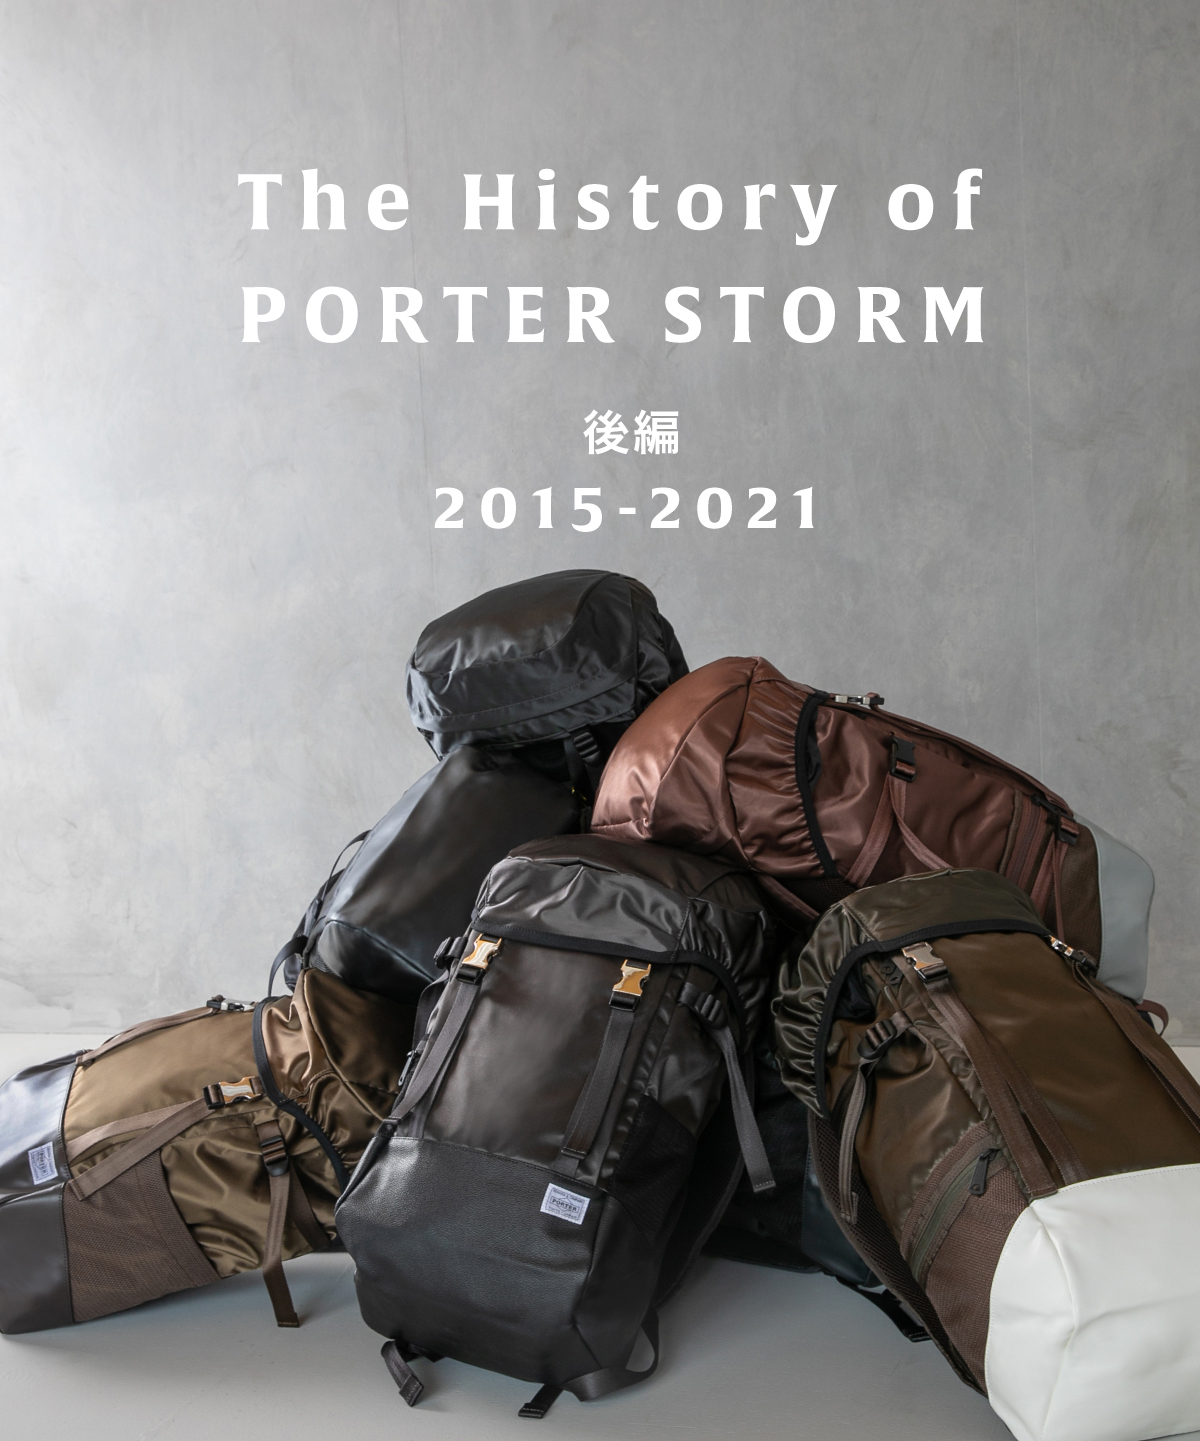 ポーター ストームの歴史を解剖 The History of PORTER STORM【後編】 - SAC'S BAR